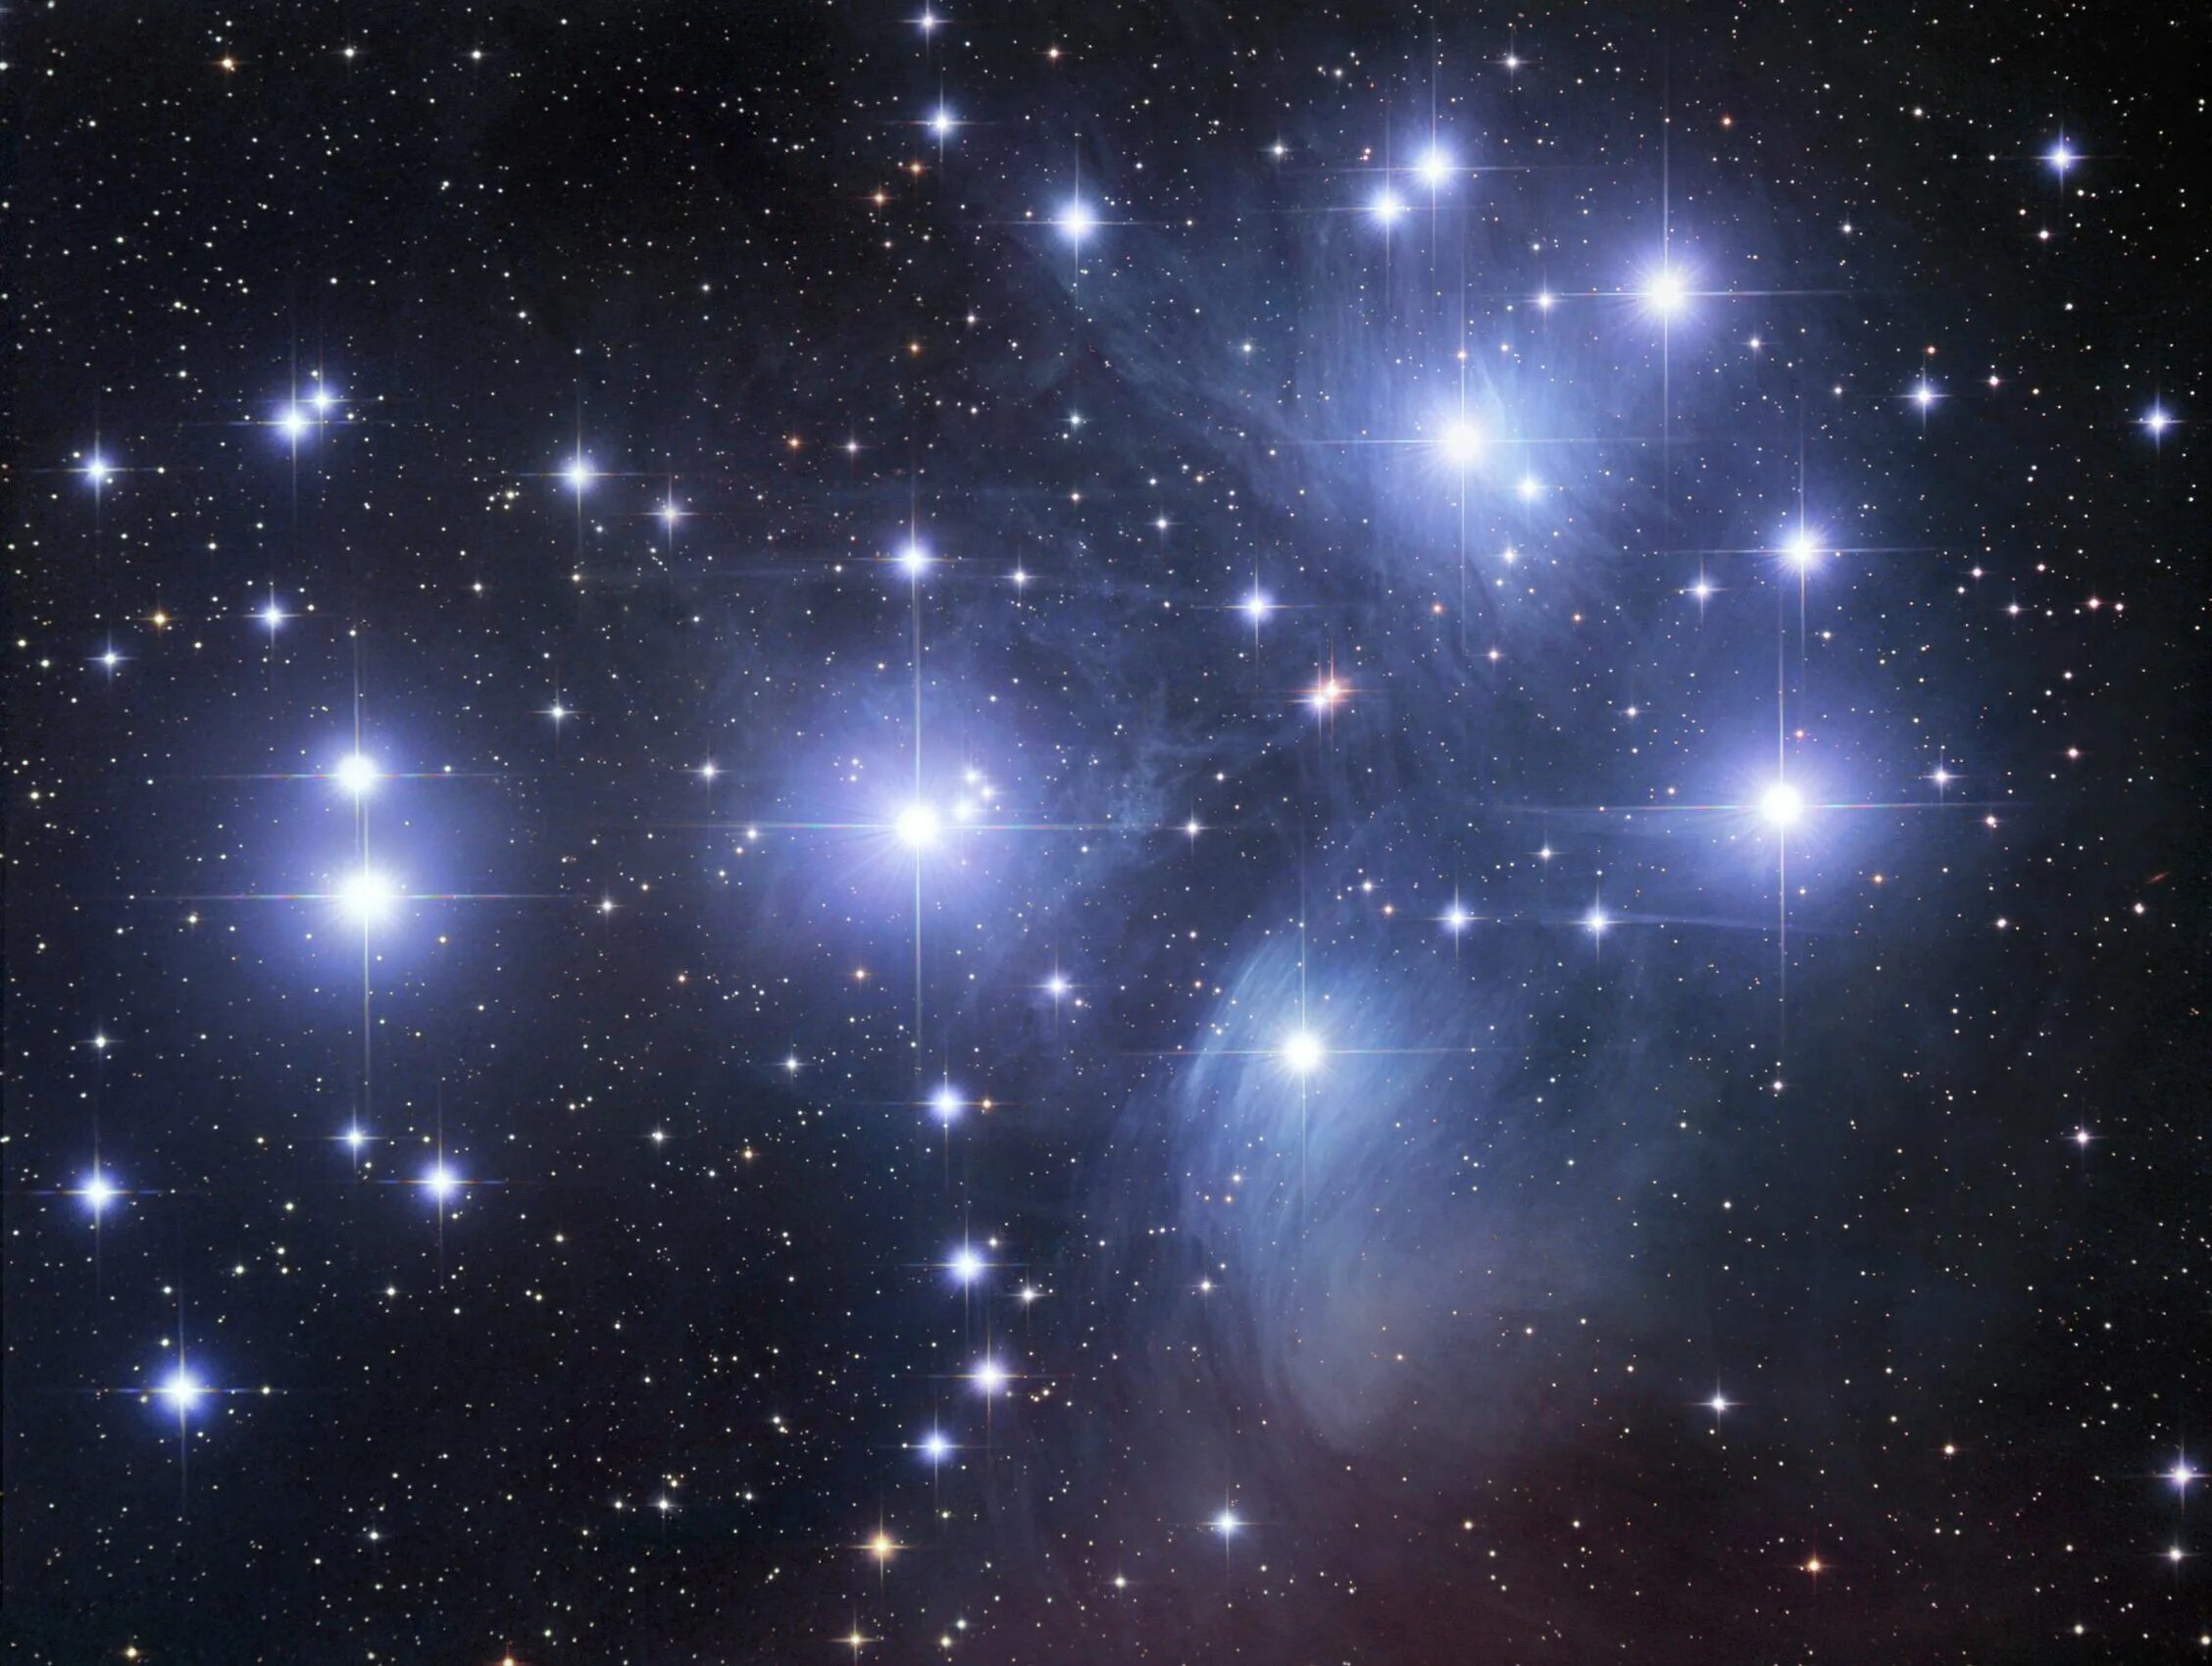 Созвездие Плеяды. Семь сестер созвездия Плеяд. M45 Pleiades. Альциона (звезда). Небо украшают звезды